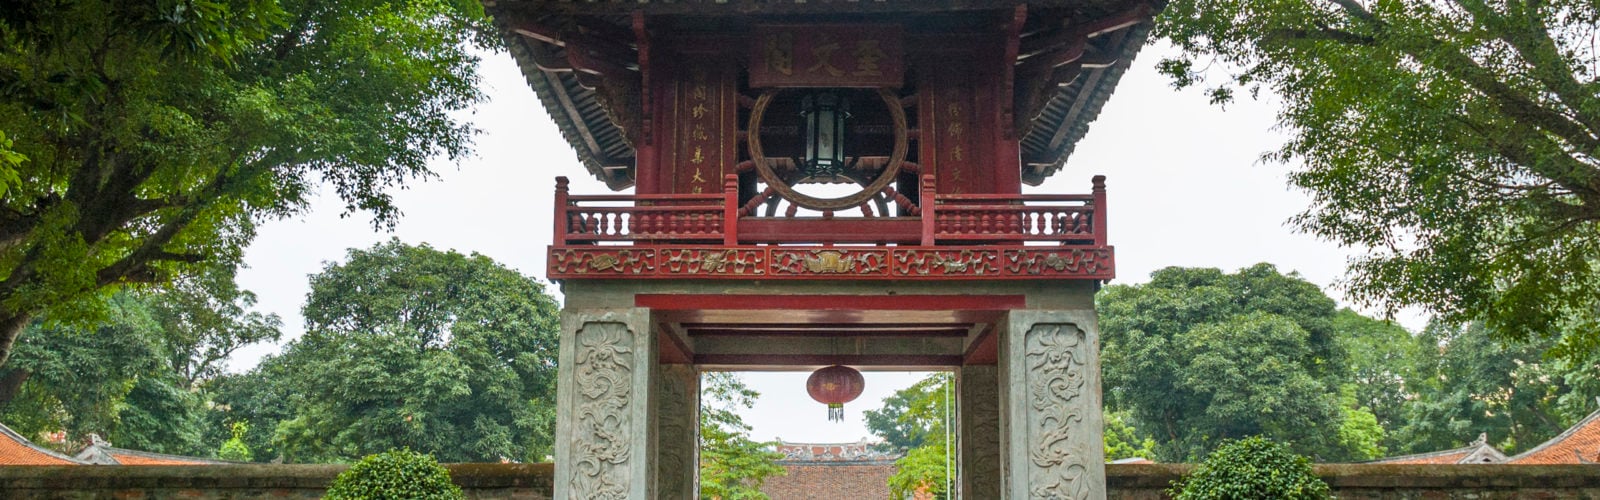 temple-of-literature-hanoi